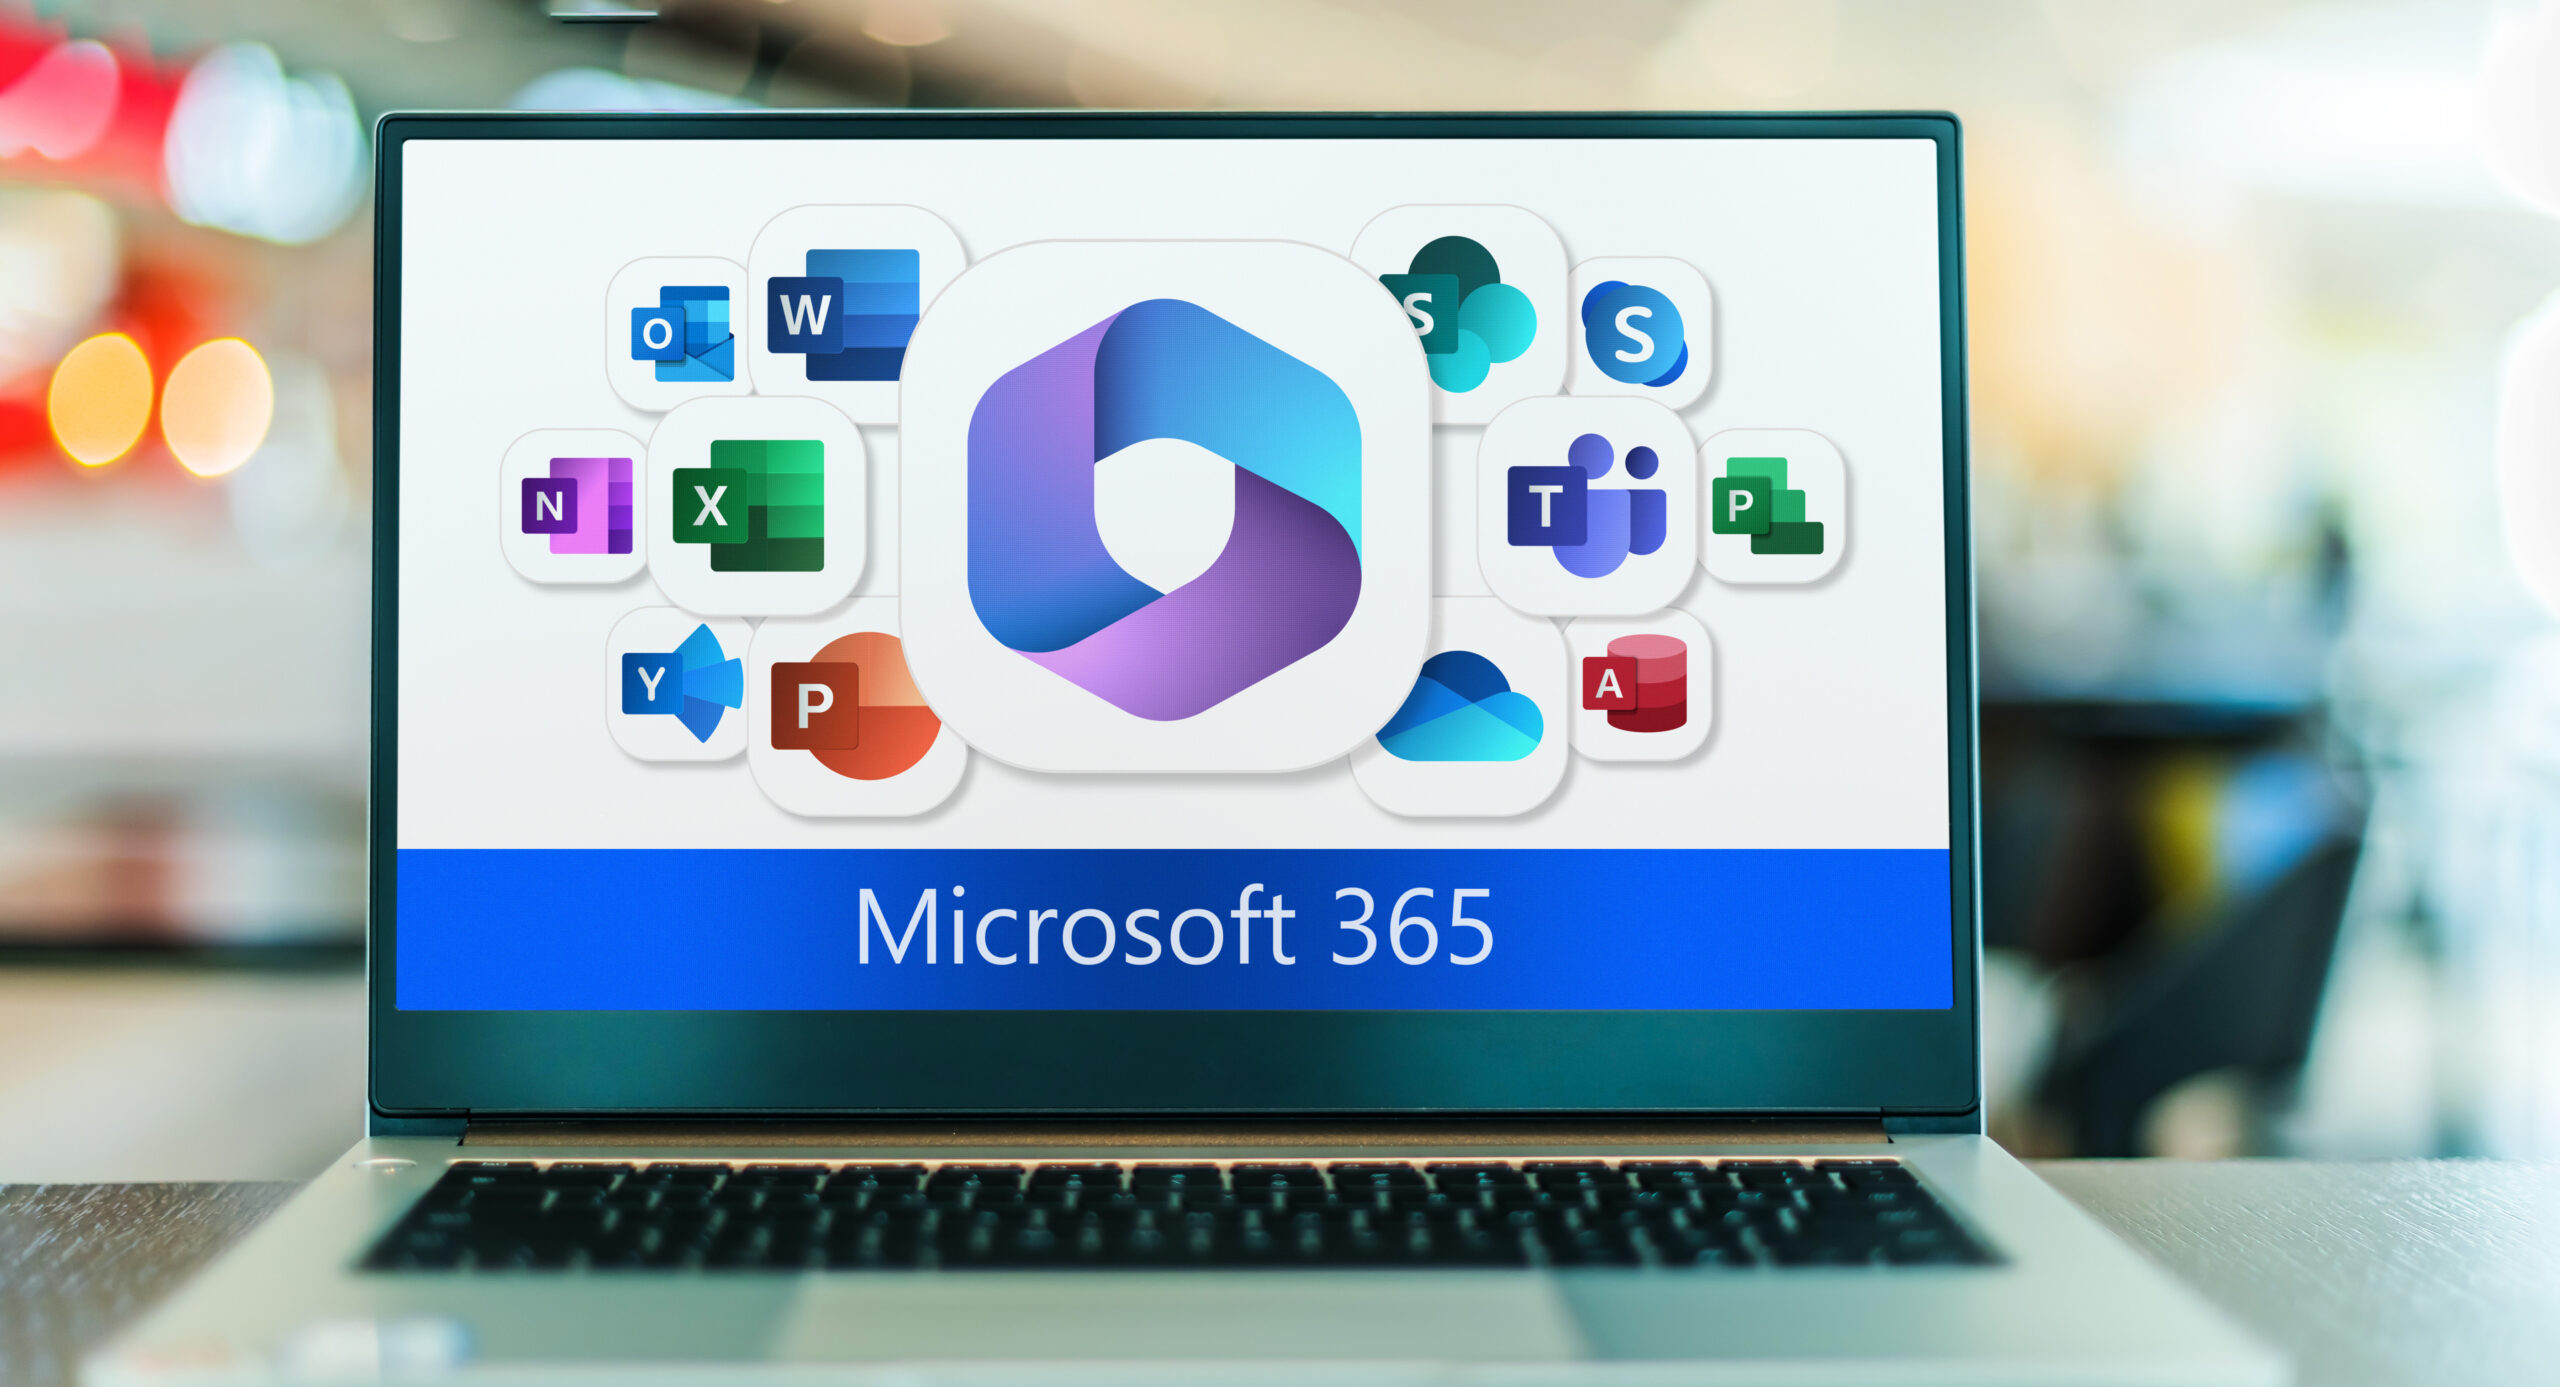 Laptop computer displaying logos of Microsoft 365